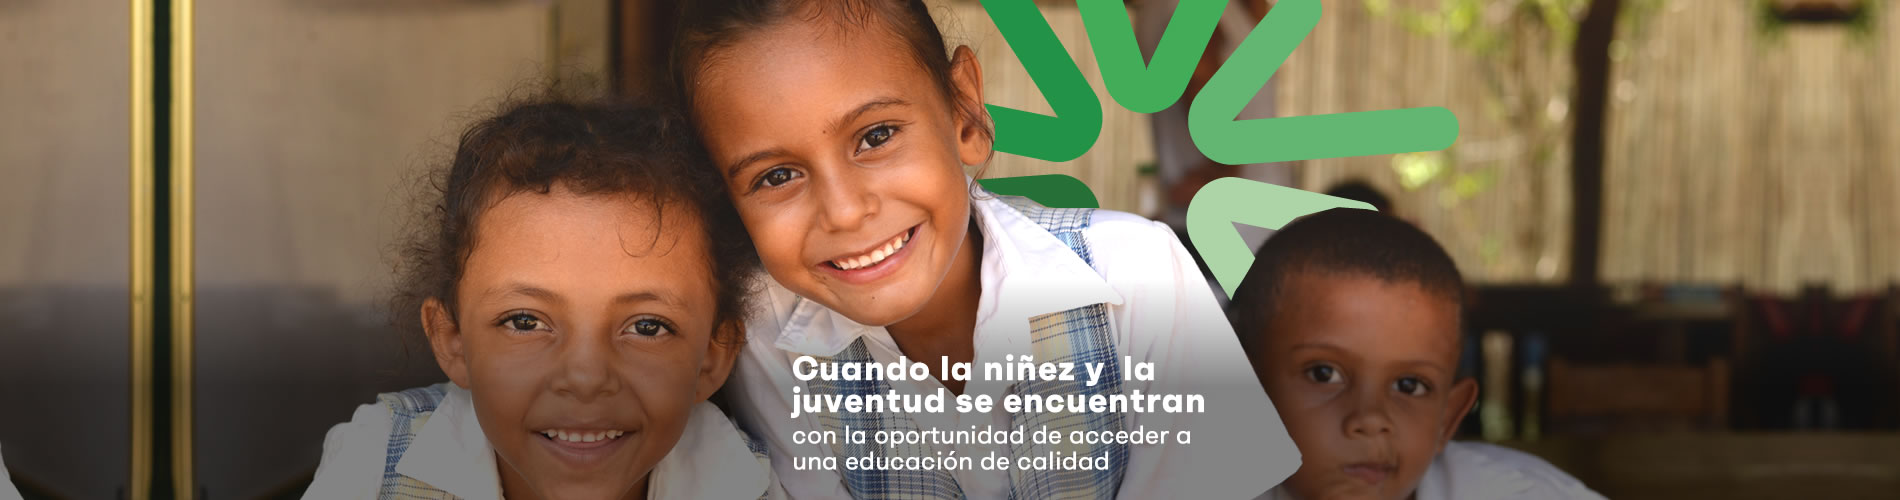 Educación Fundación Santo Domingo